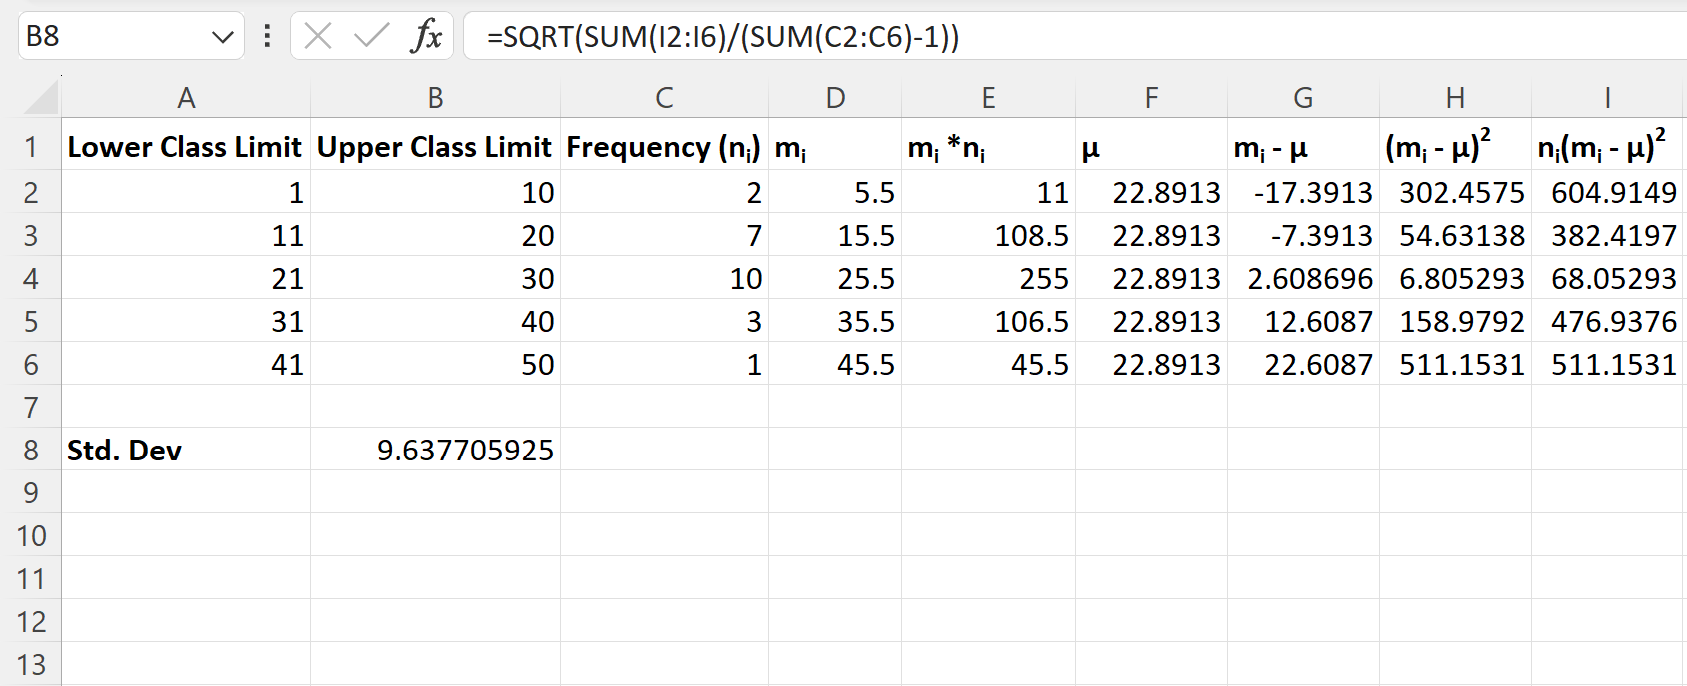 Desvio padrão do Excel da distribuição de frequência